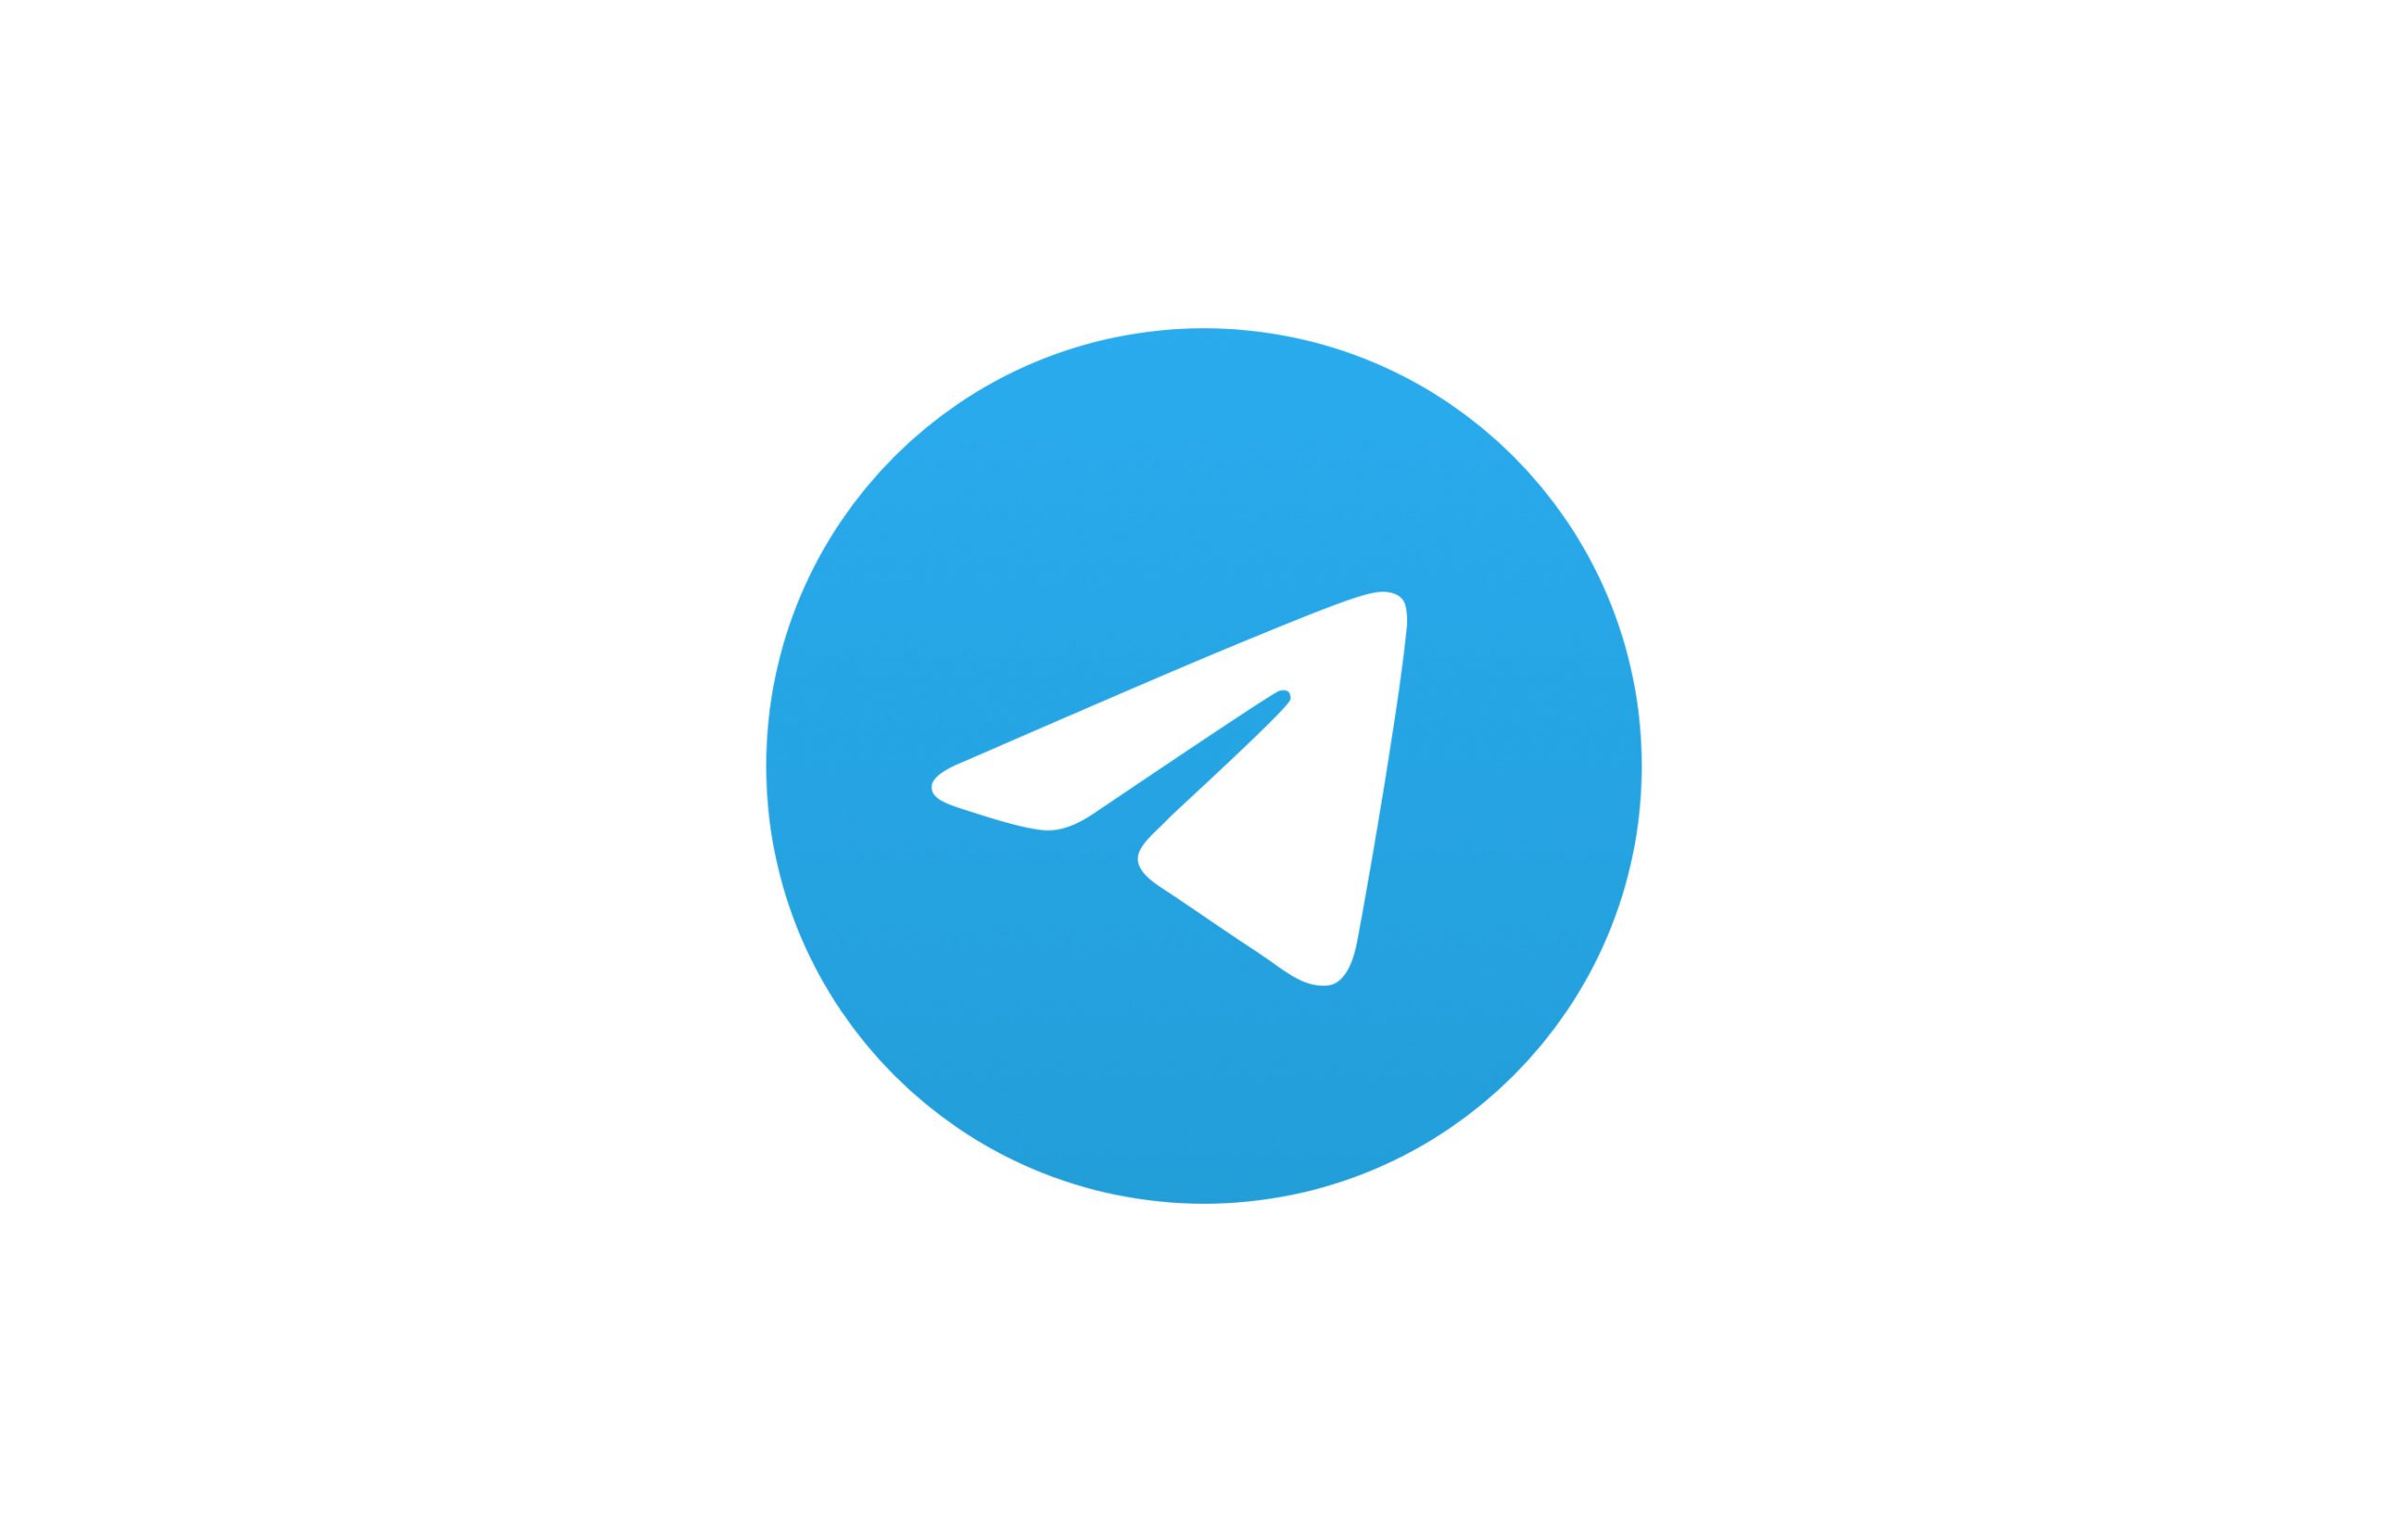 telegram 频道群组推荐服务，发掘更有趣的电报频道群组